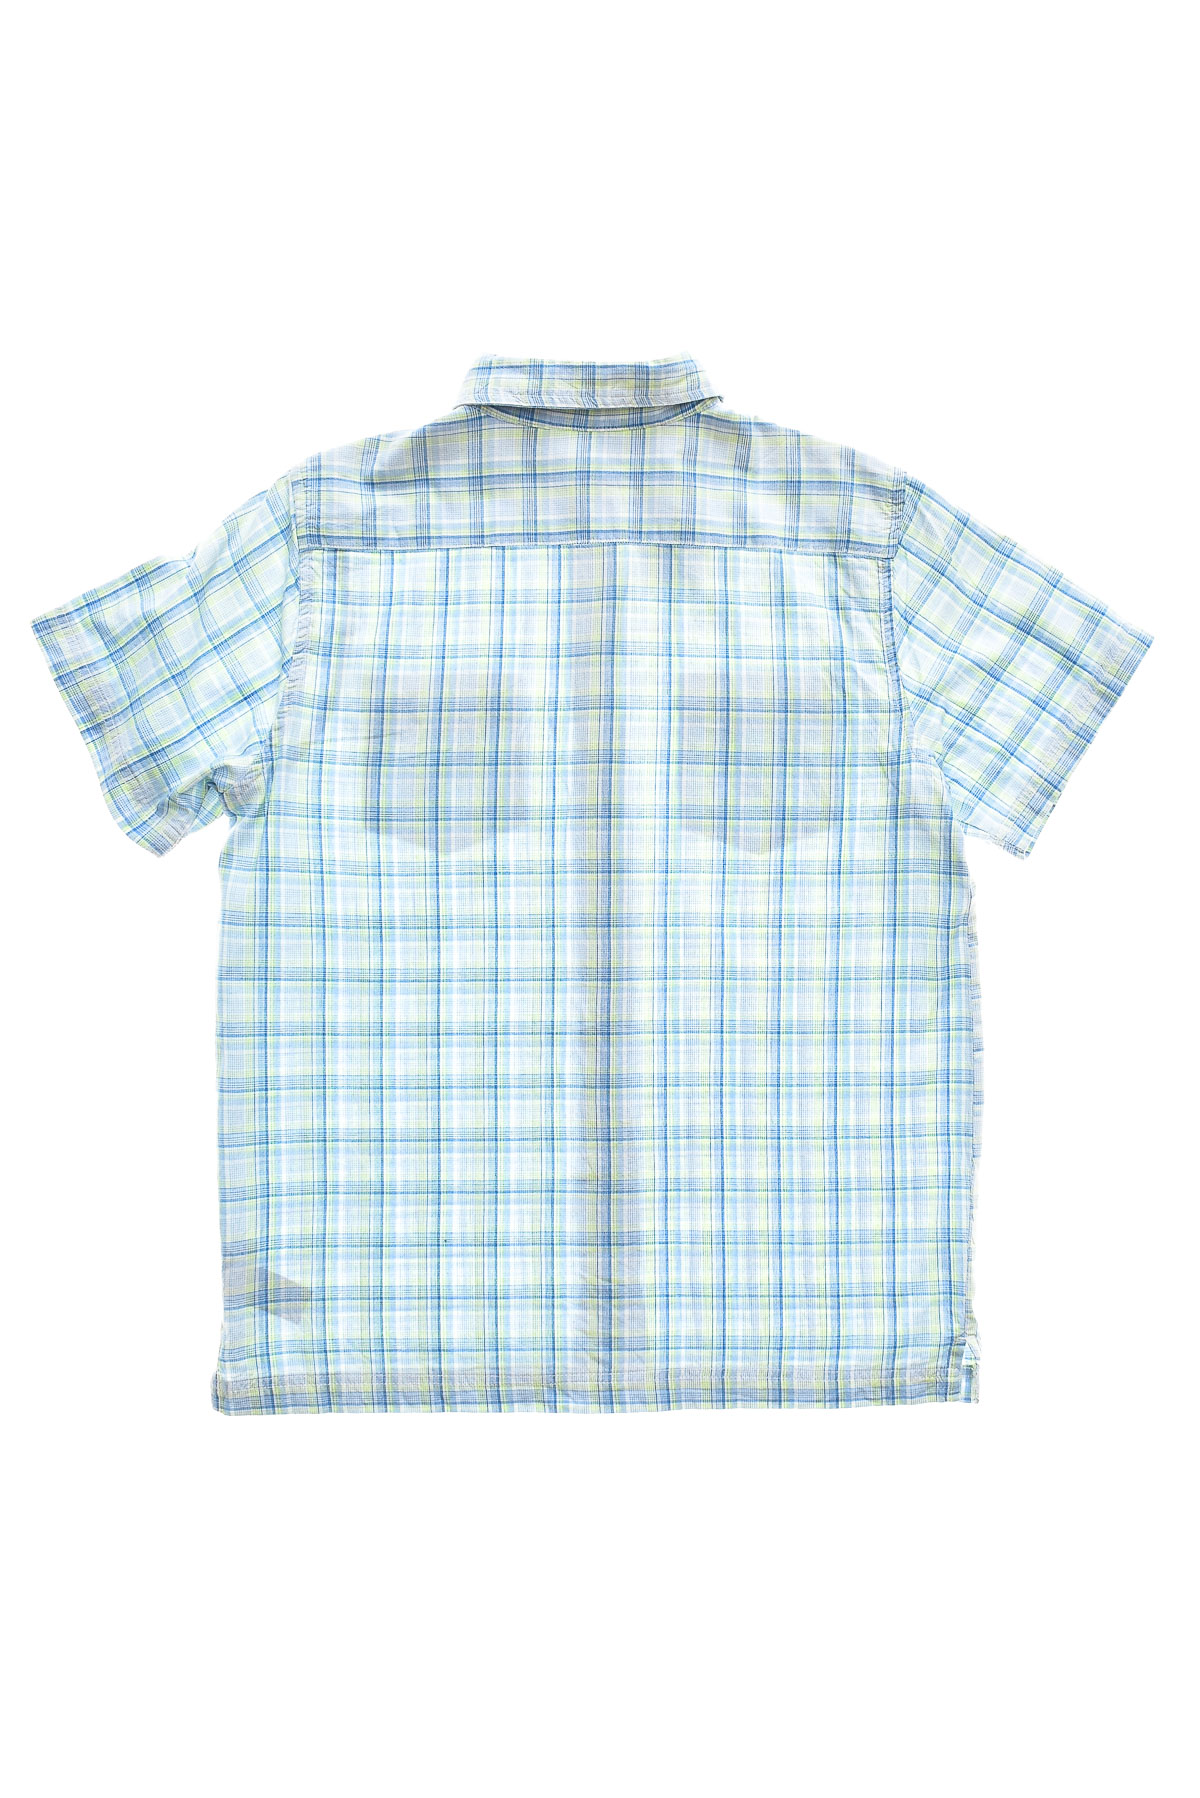 Ανδρικό πουκάμισο - CHEROKEE - 1